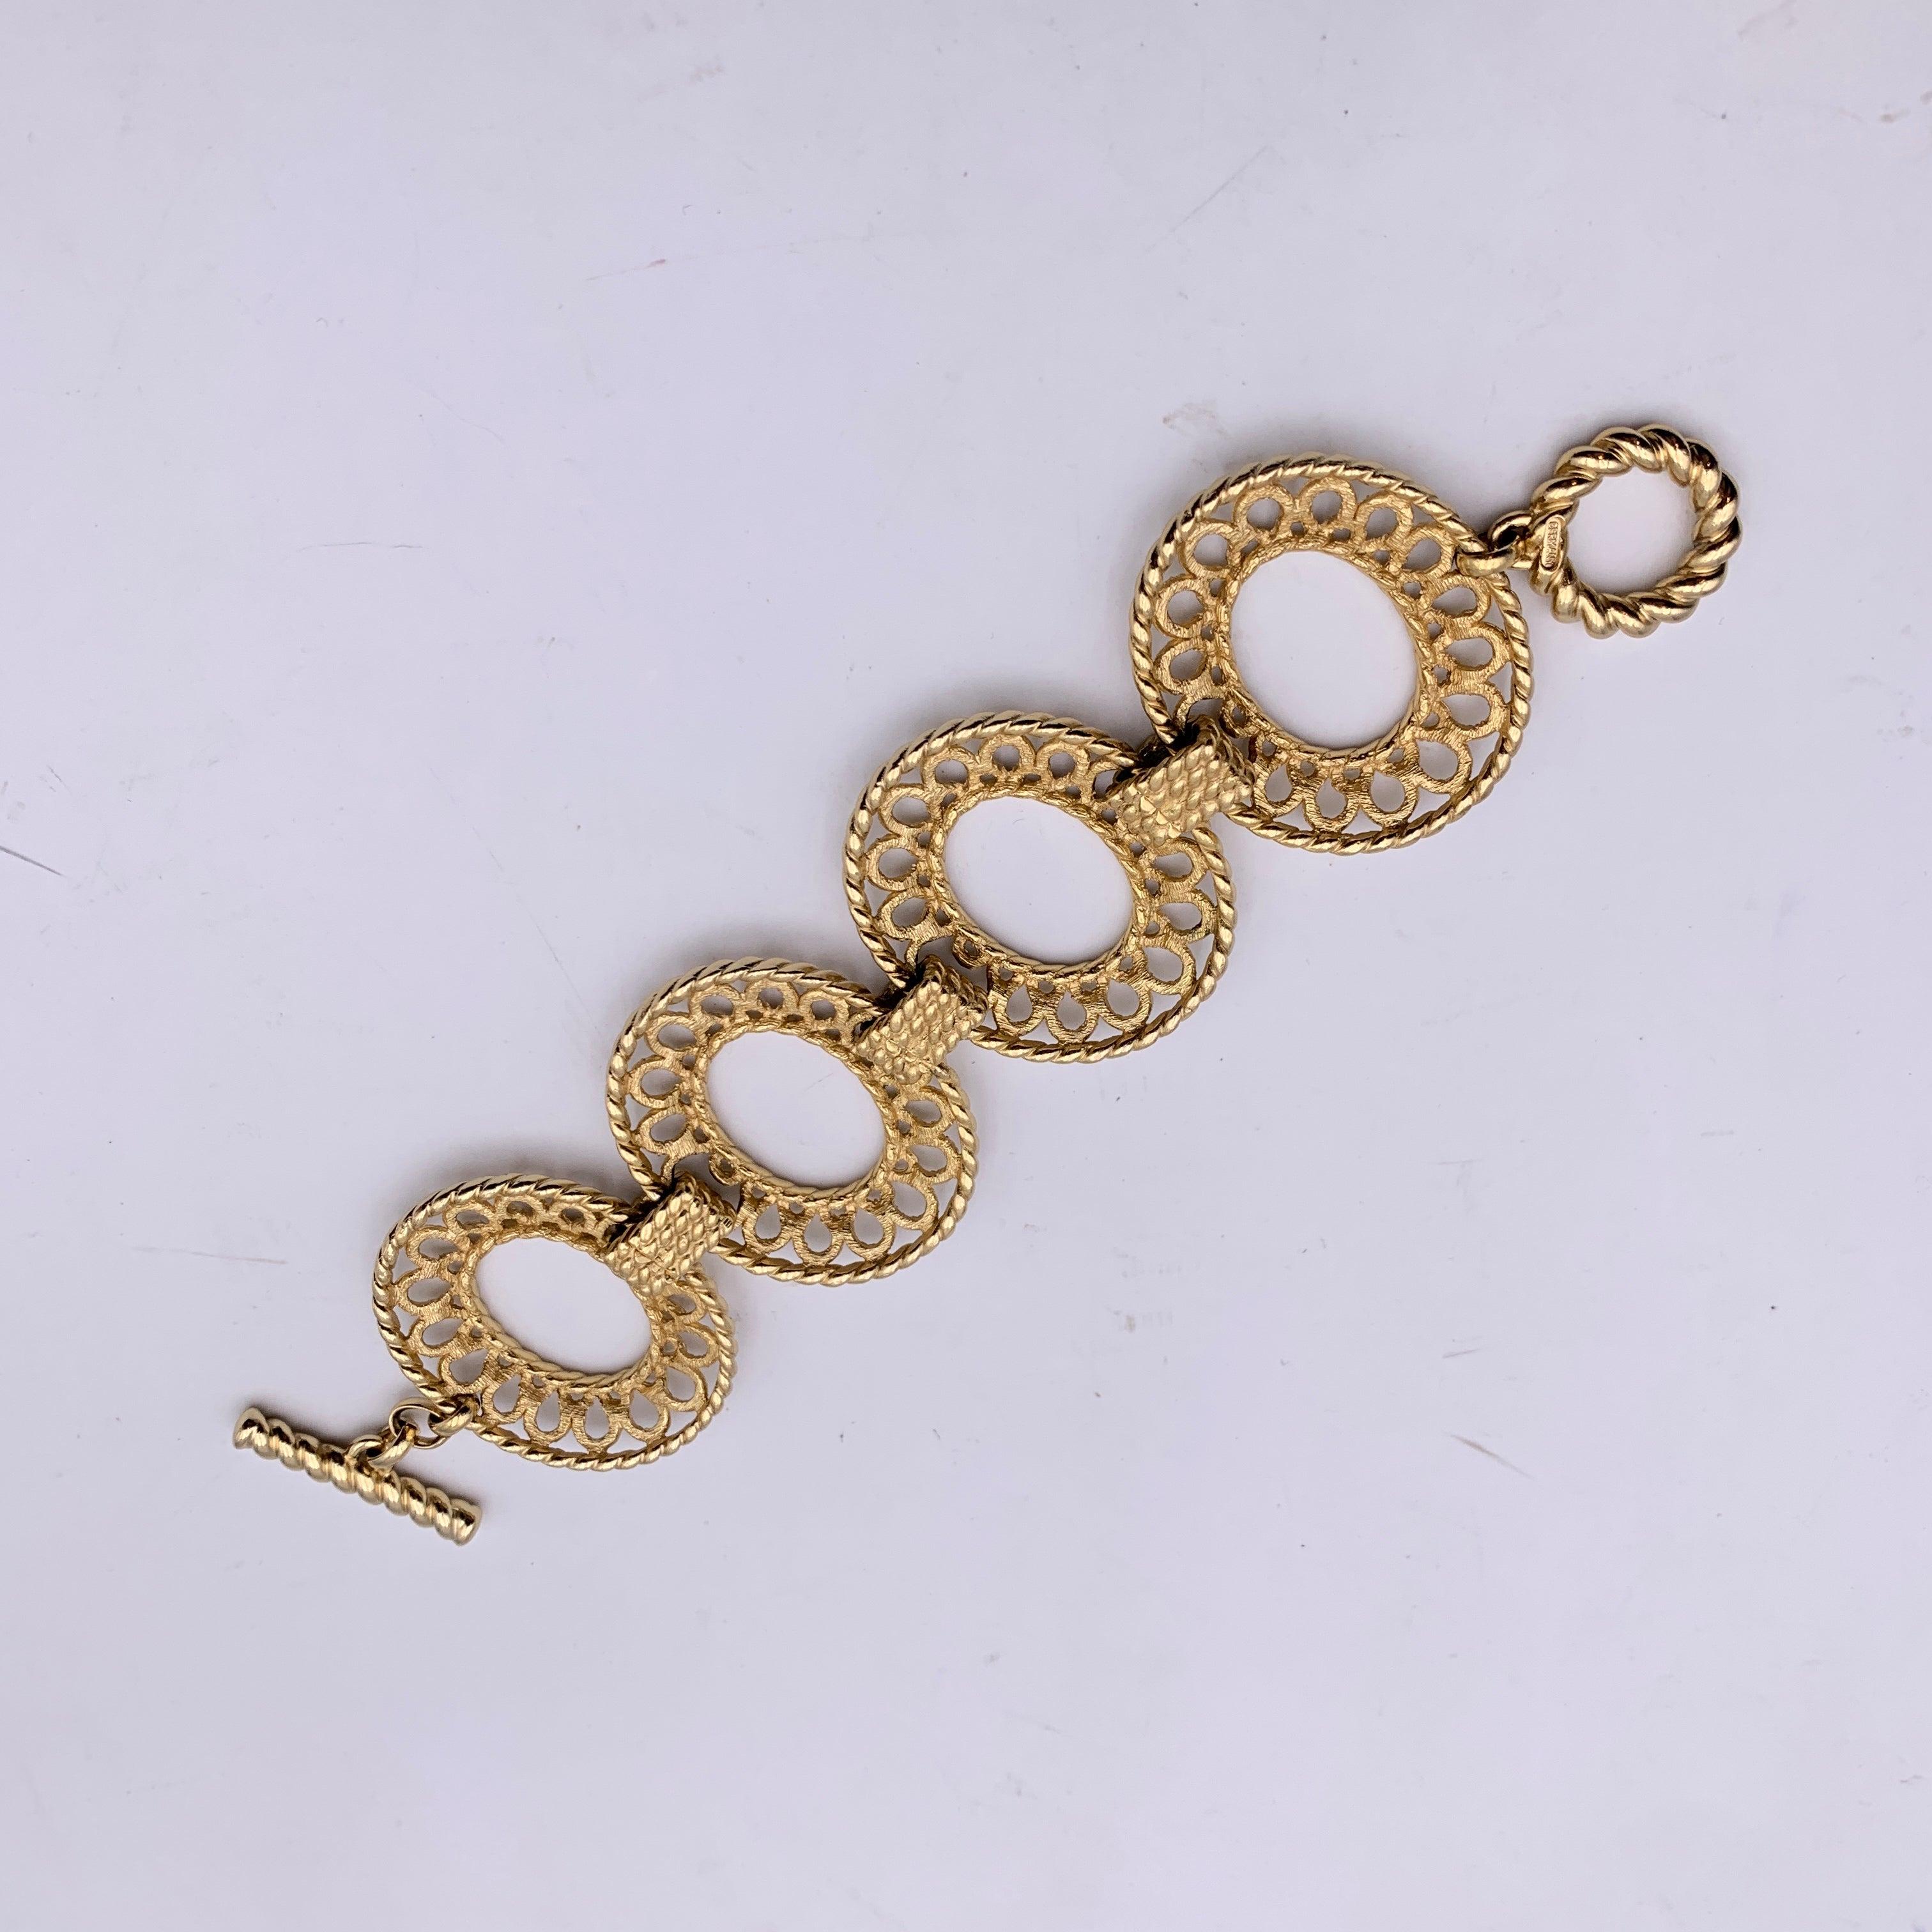 Christian Dior Vintage Gold Metal Oval Ring Bracelet 1